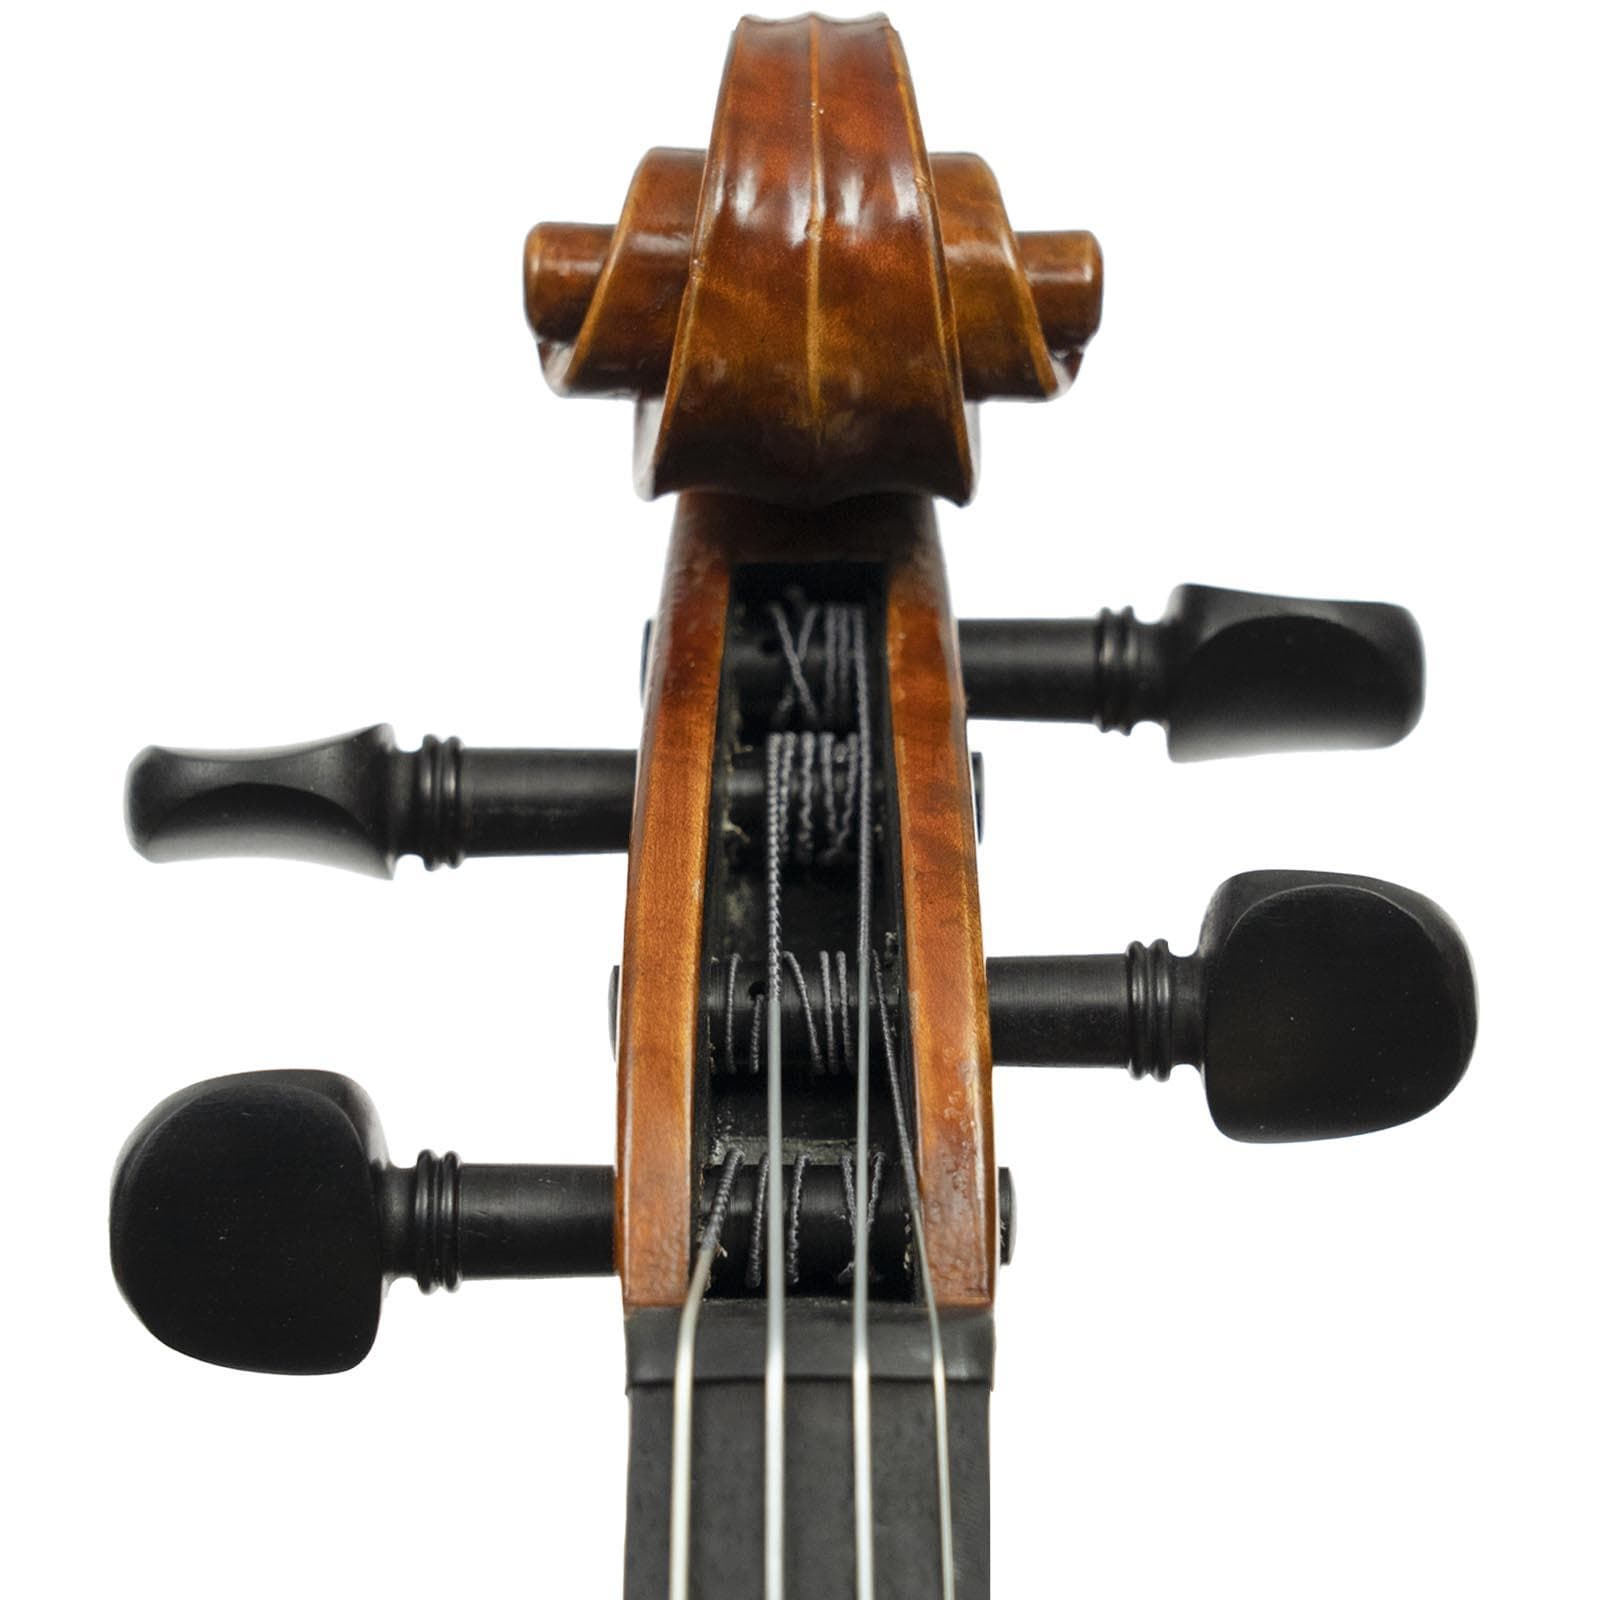 Pre-Owned Franz Hoffmann Concert Violin